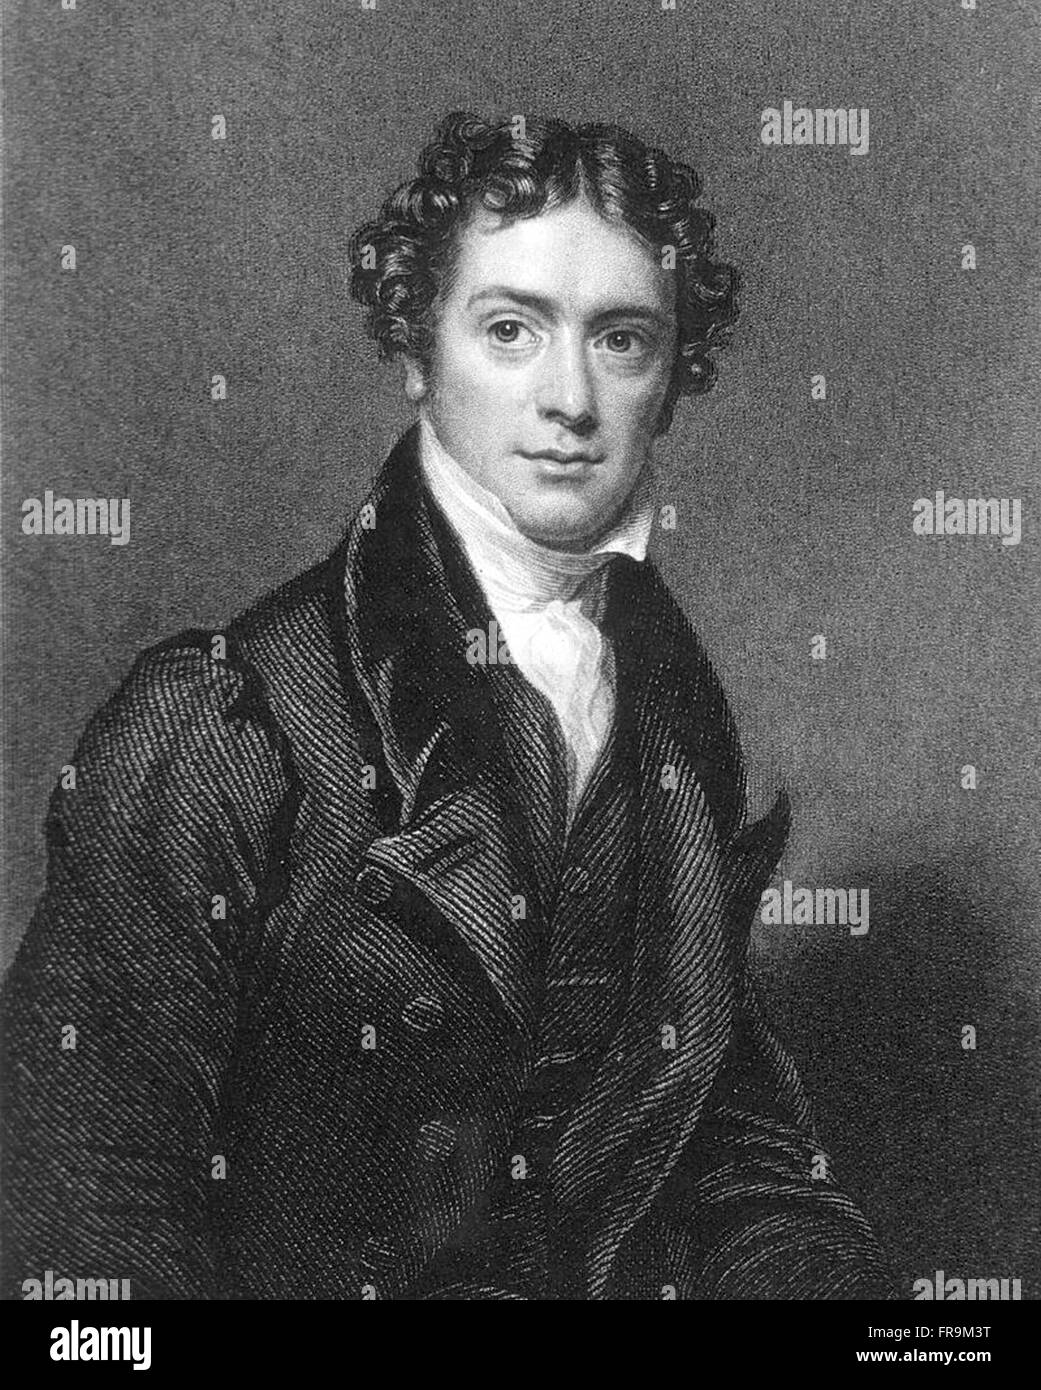 Ritratto di Michael Faraday - (22 settembre 1791 - 25 agosto 1867) nel suo fine degli anni trenta. Visto qui in una incisione di John Cochran (1821-1865). Michael Faraday - 22 settembre 1791 - 25 agosto 1867 fu uno scienziato inglese che hanno contribuito ai campi di elettromagnetismo ed elettrochimica. I suoi principali scoperte includono quelli di induzione elettromagnetica diamagnetism ed elettrolisi. Foto Stock